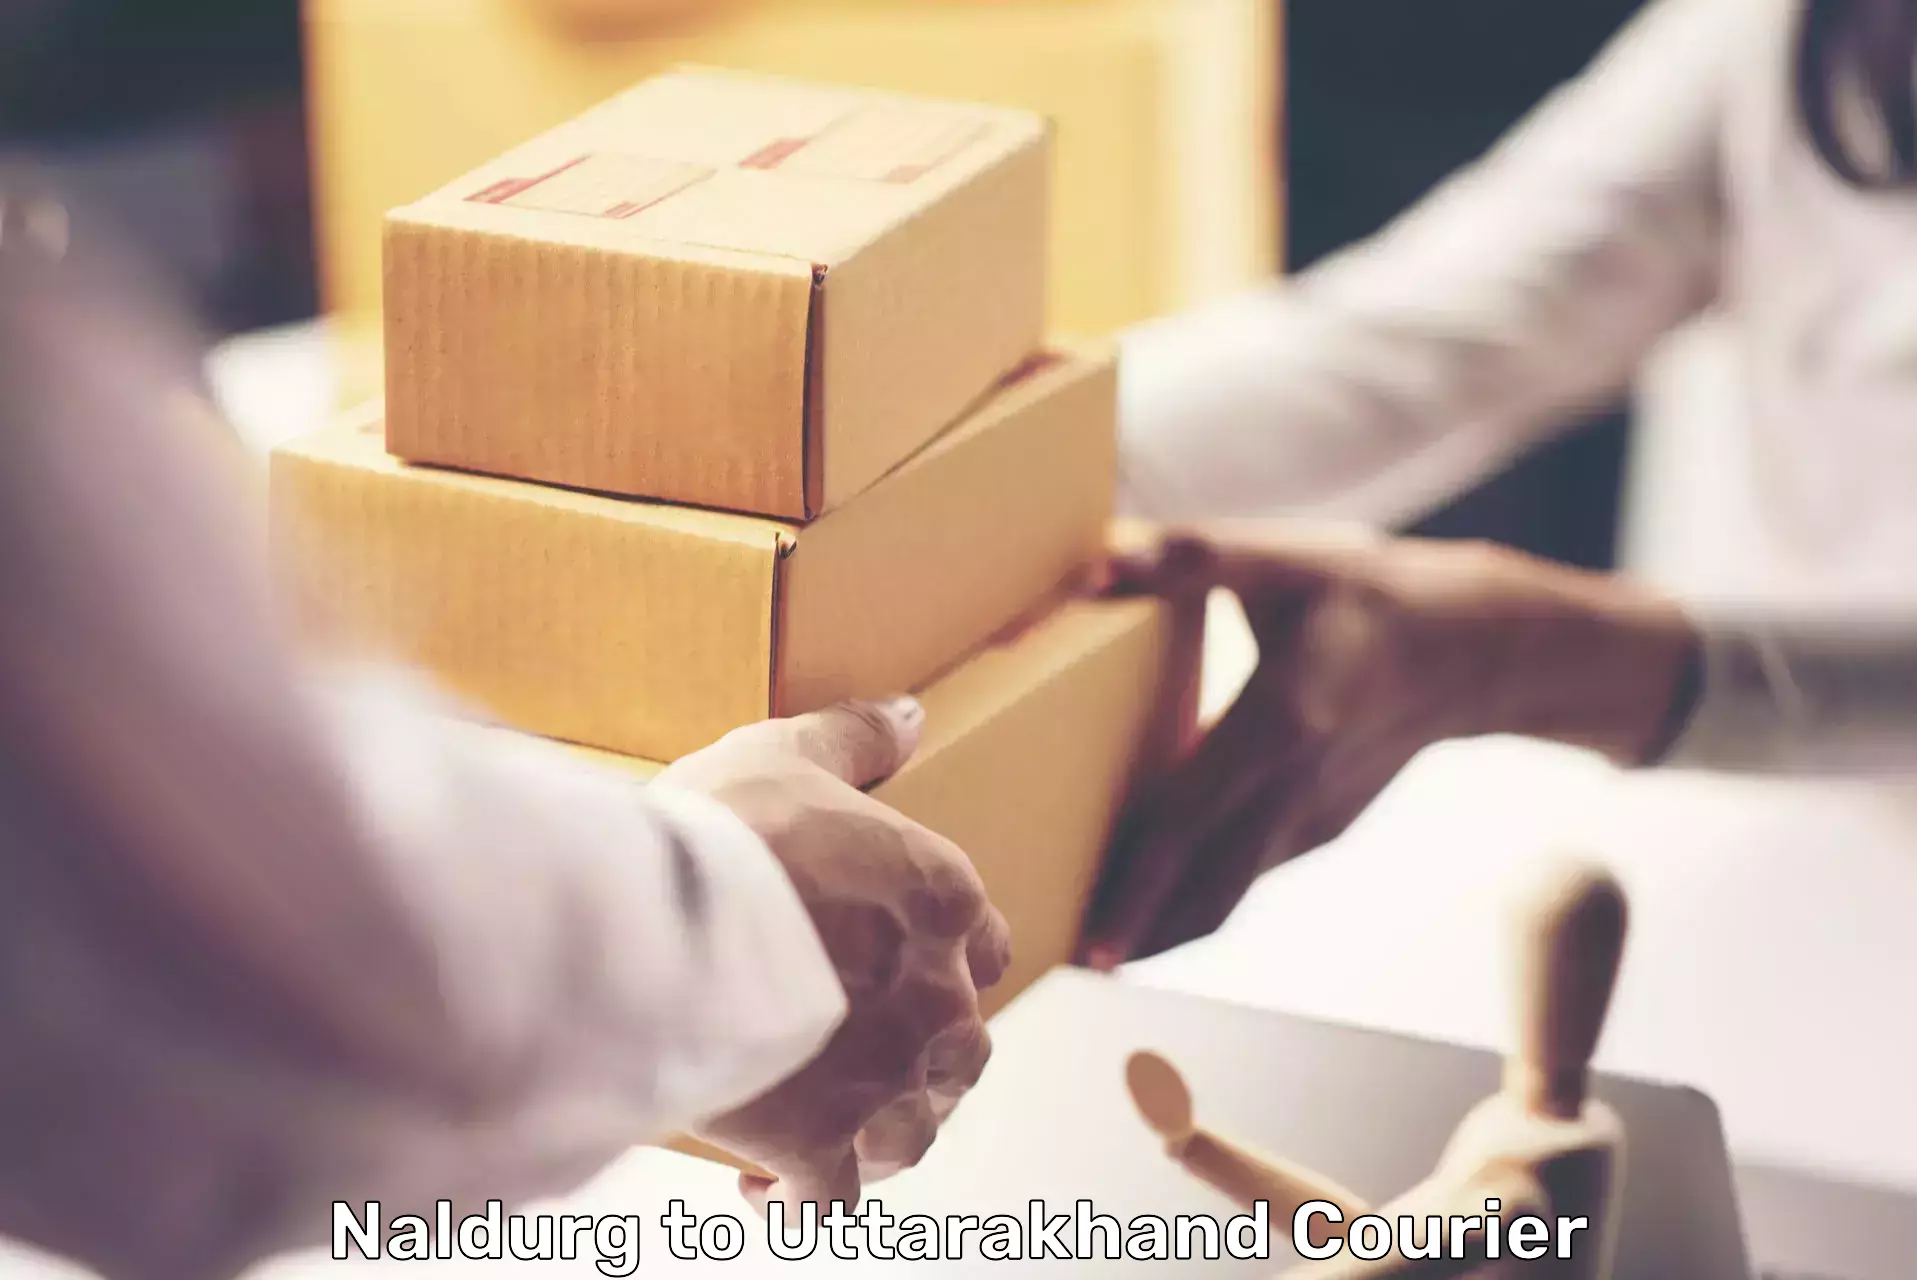 Custom courier packages Naldurg to Rishikesh